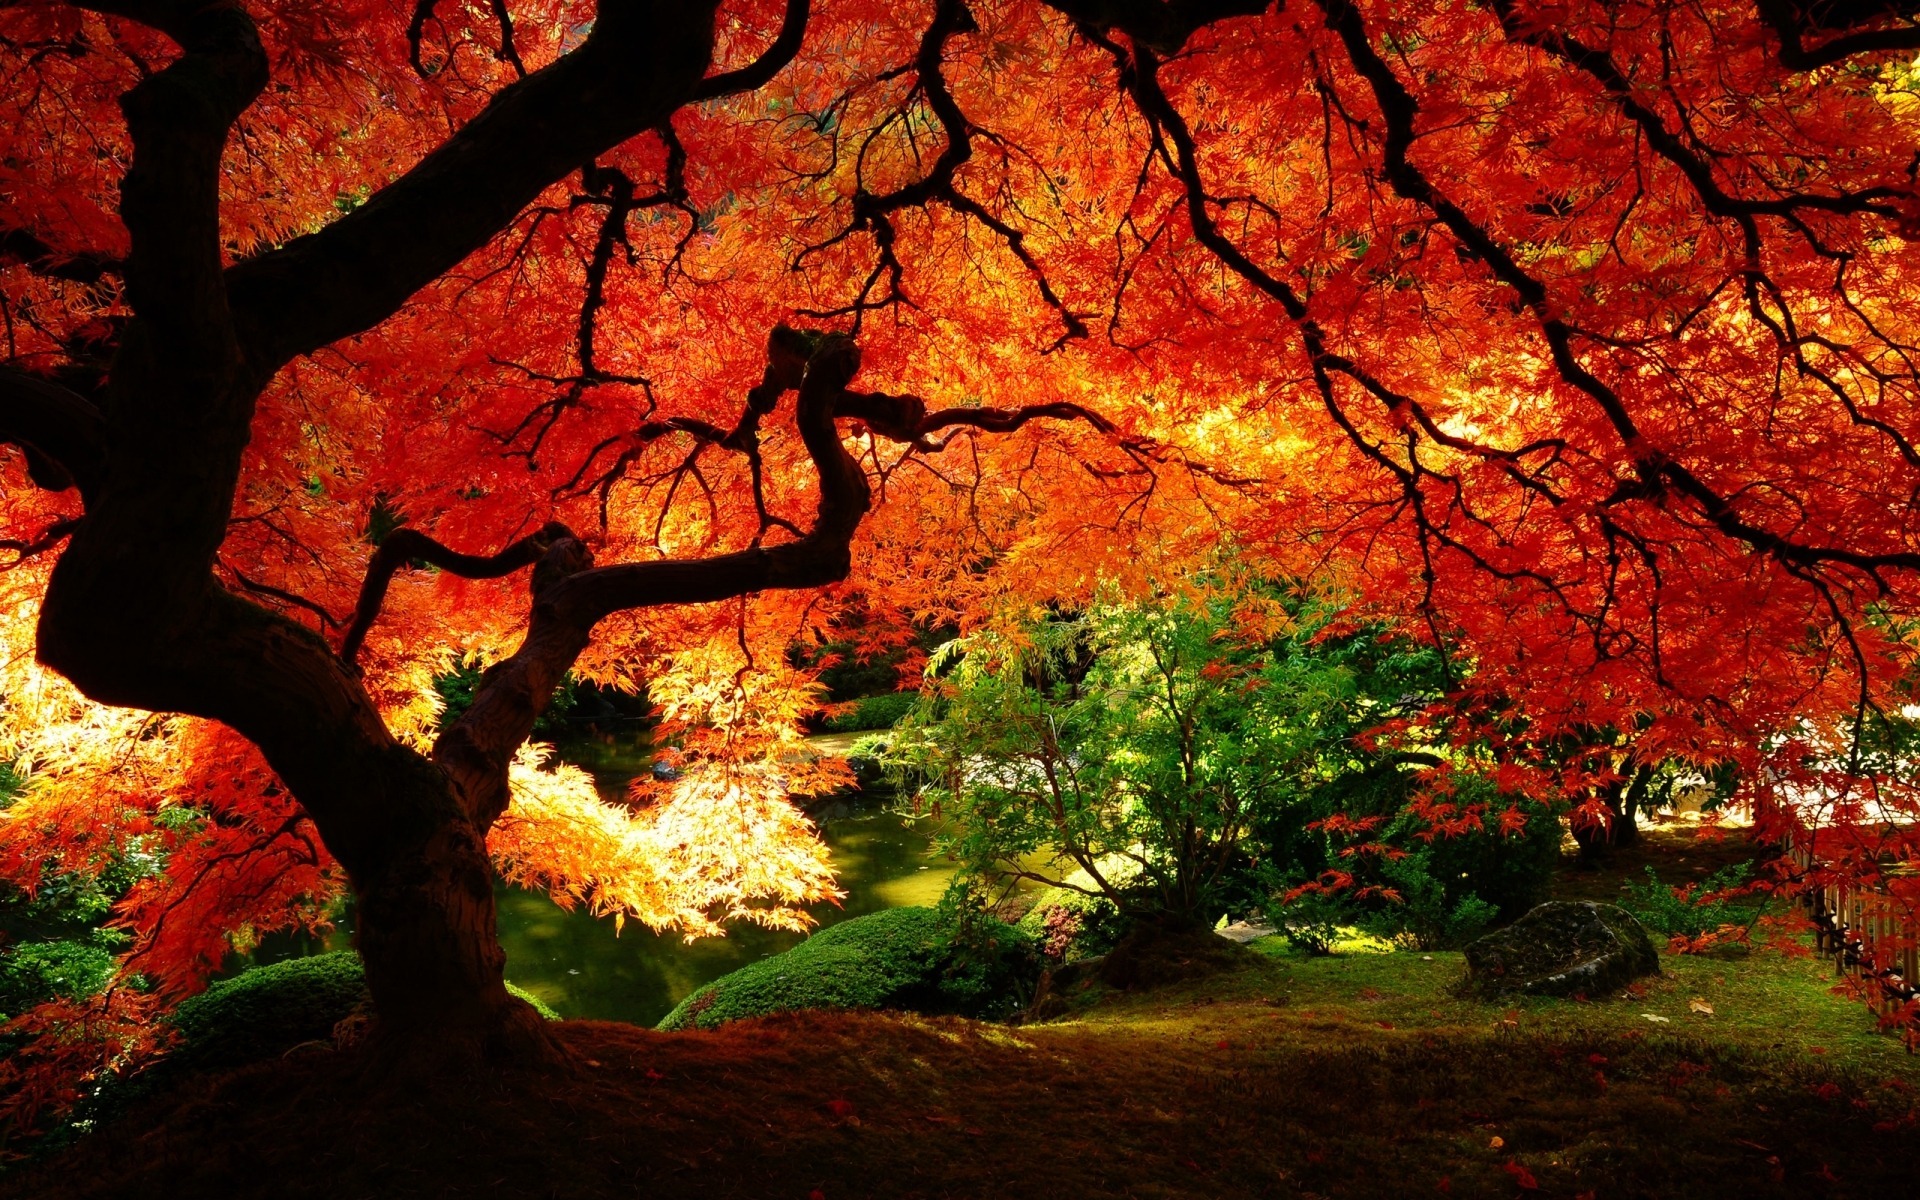 عکس های زیبا از طبیعت پاییزی